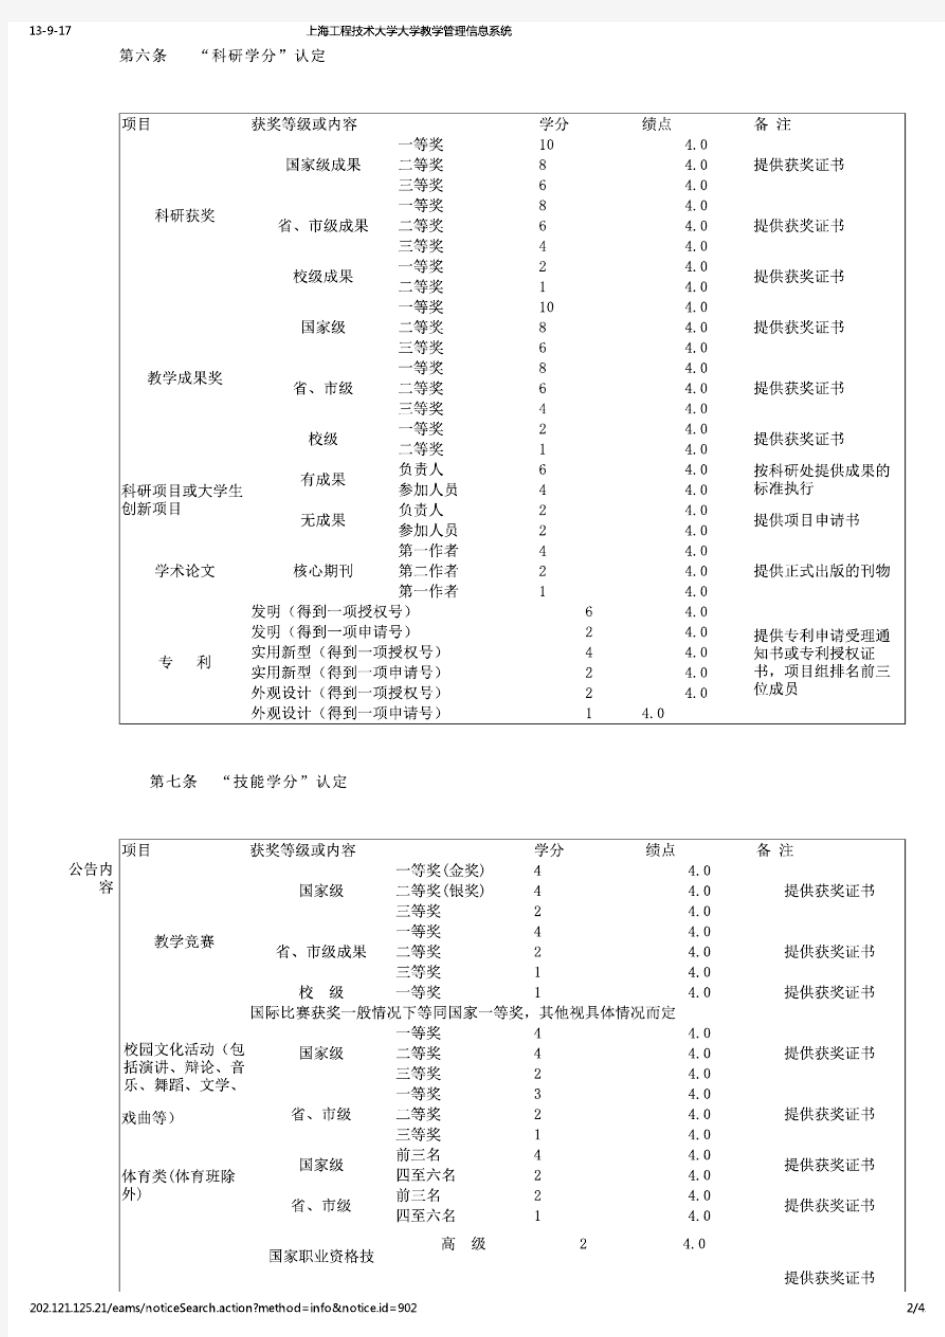 《上海工程技术大学创新学分认定与管理办法(试行)》